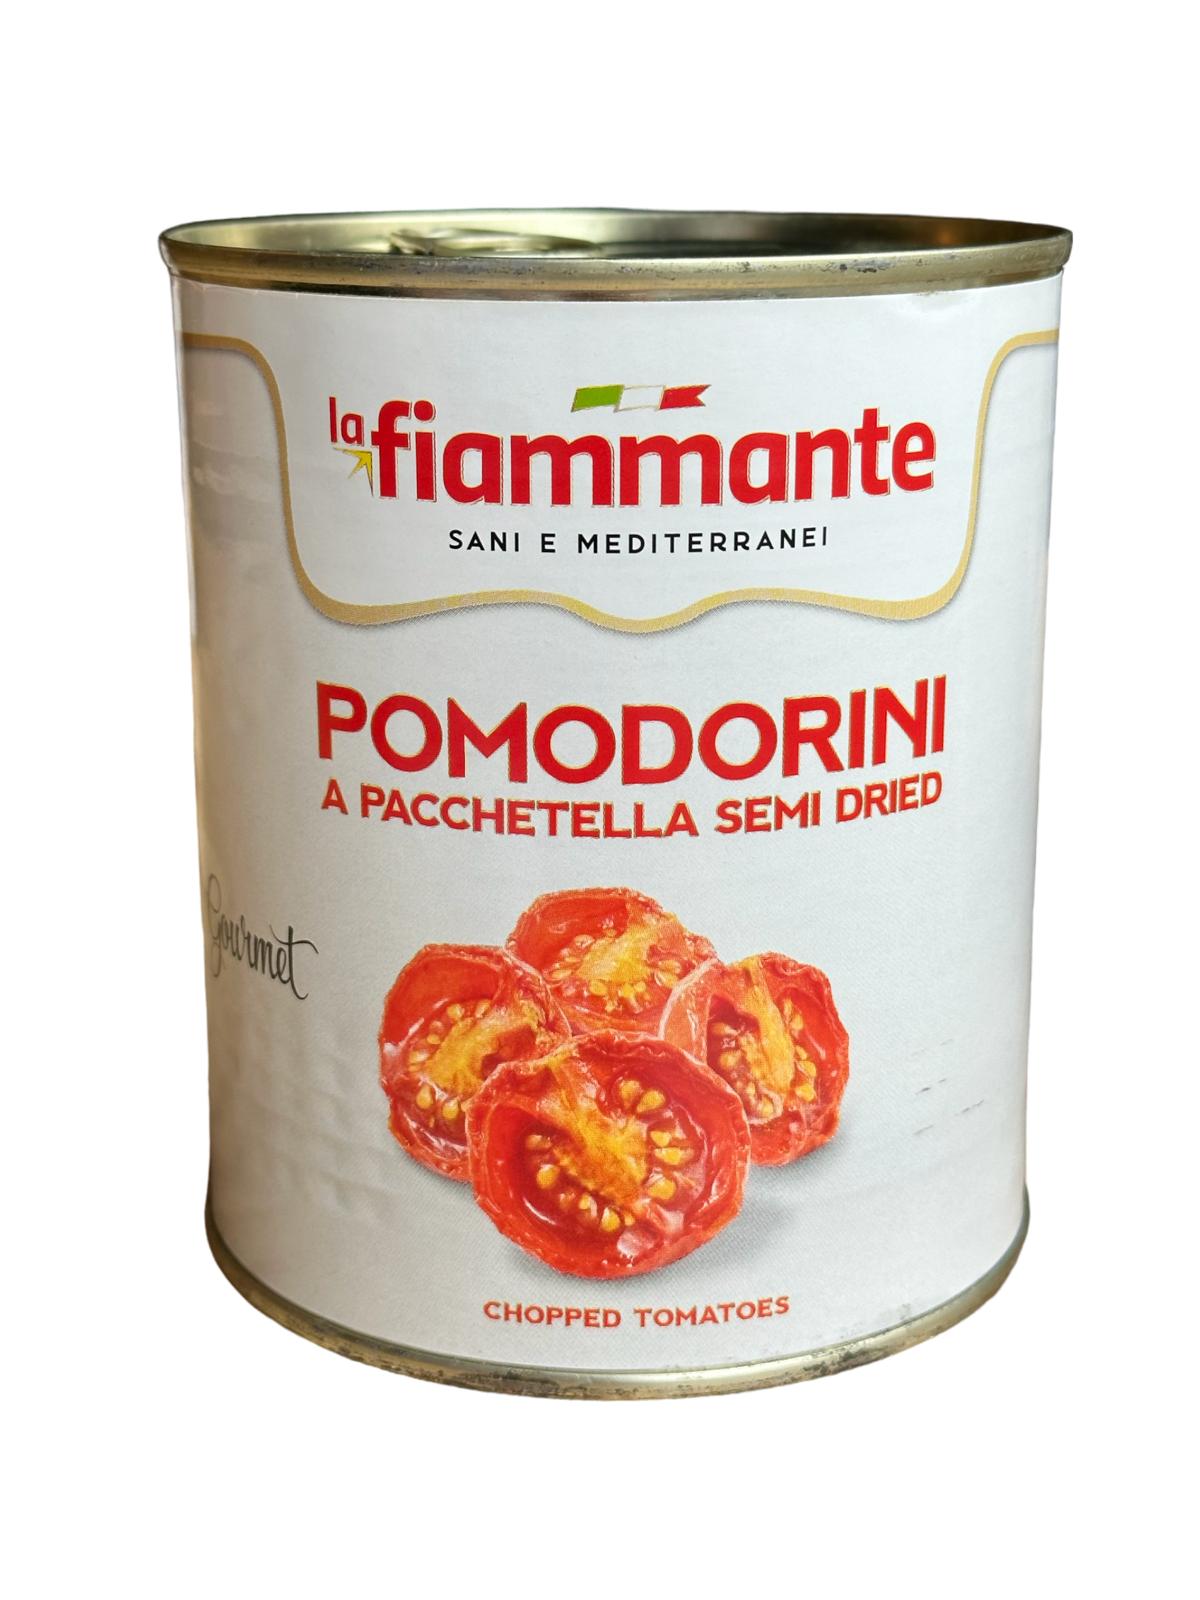 Pomodorini a pacchetella semi dried 750 g